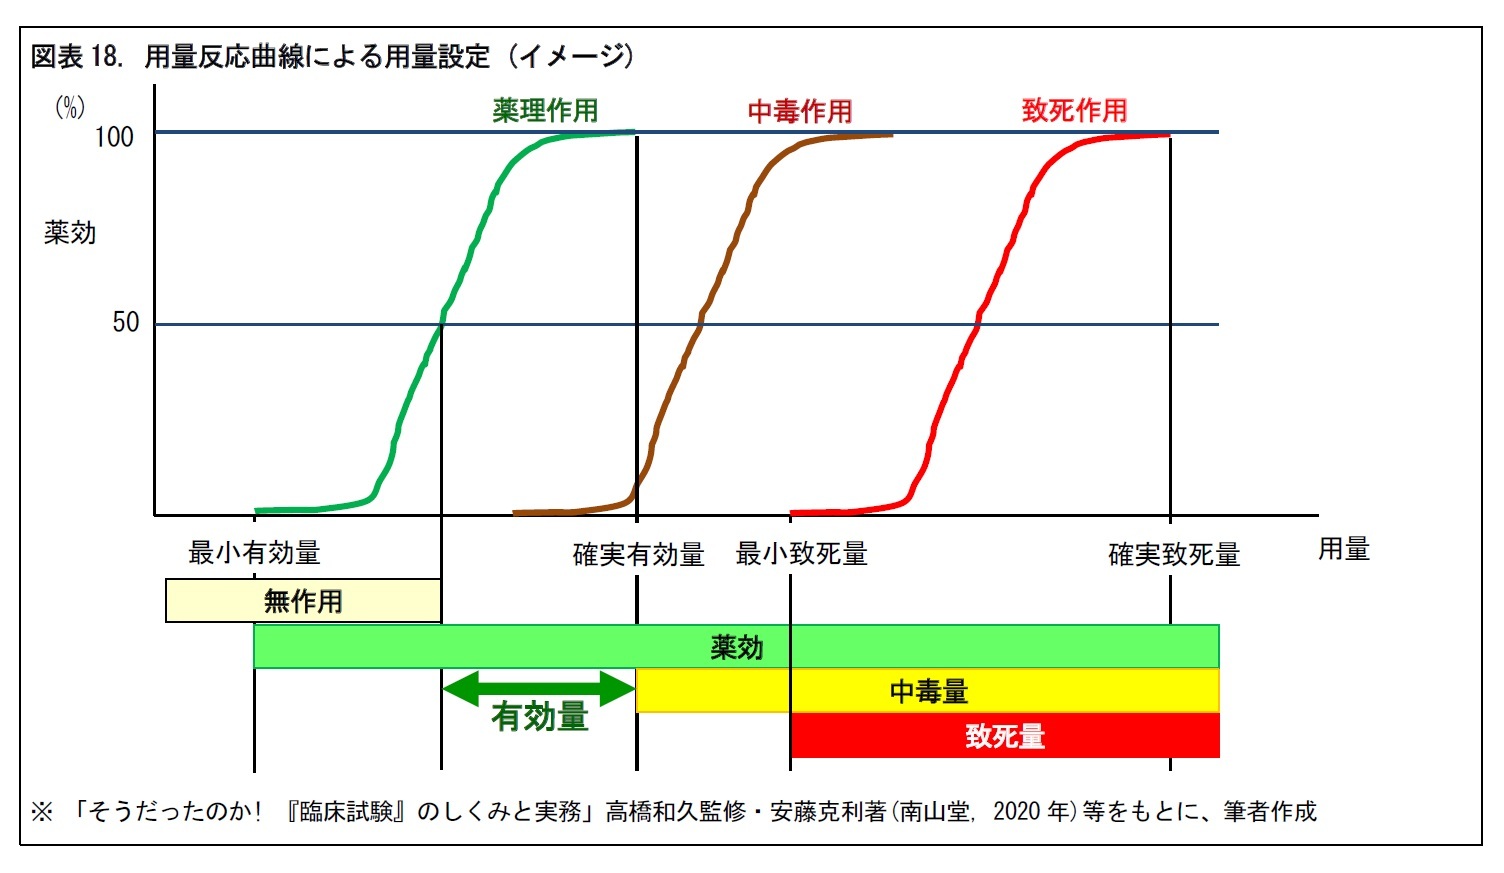 図表18. 用量反応曲線による用量設定 (イメージ)